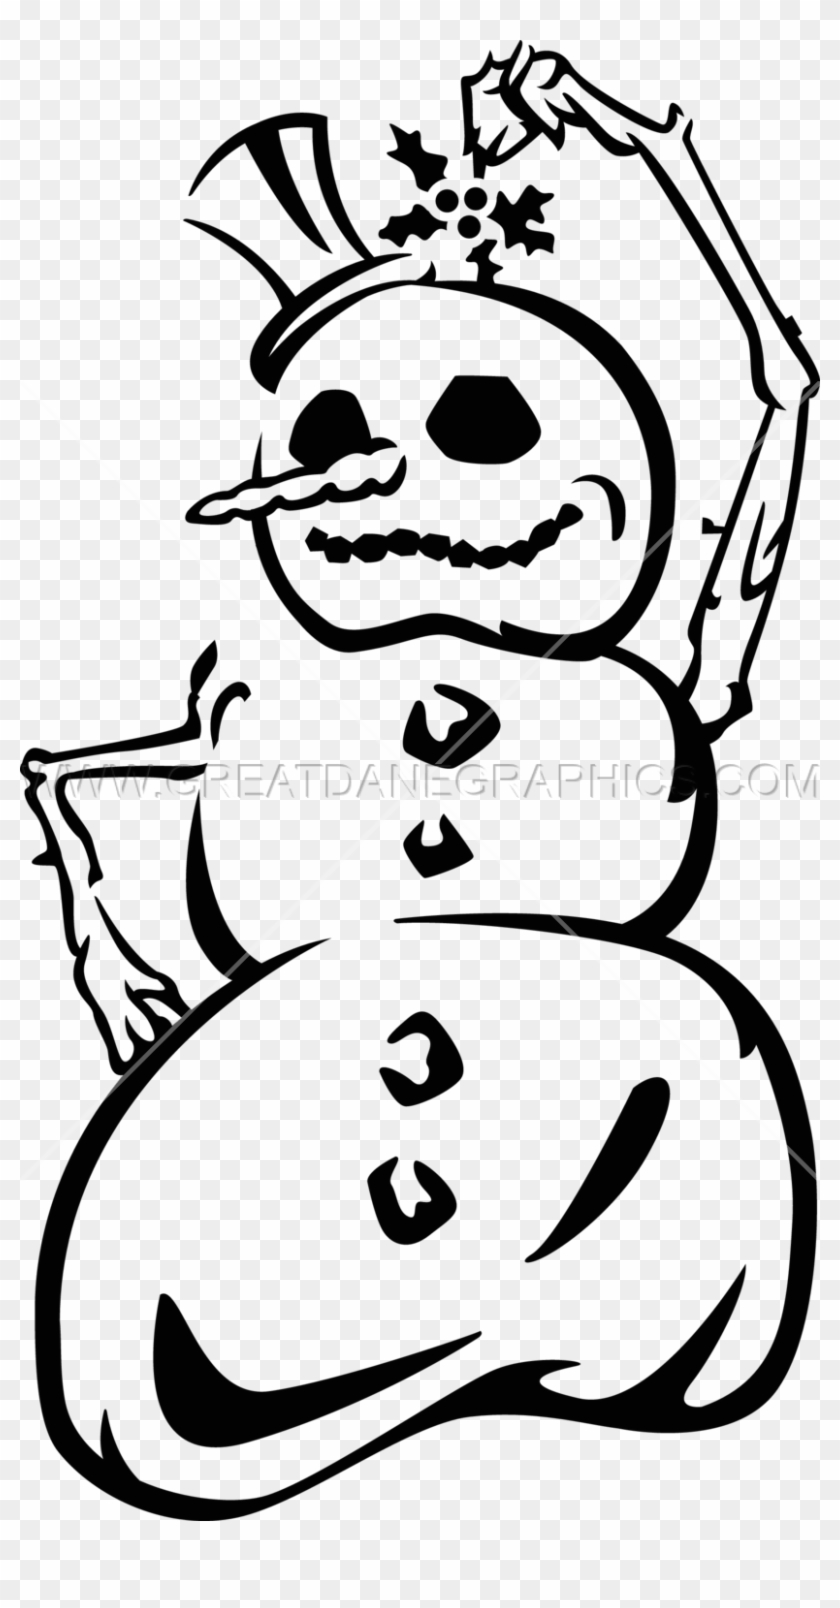 Drawing Snowman Face - Drawing Snowman Face #1515335